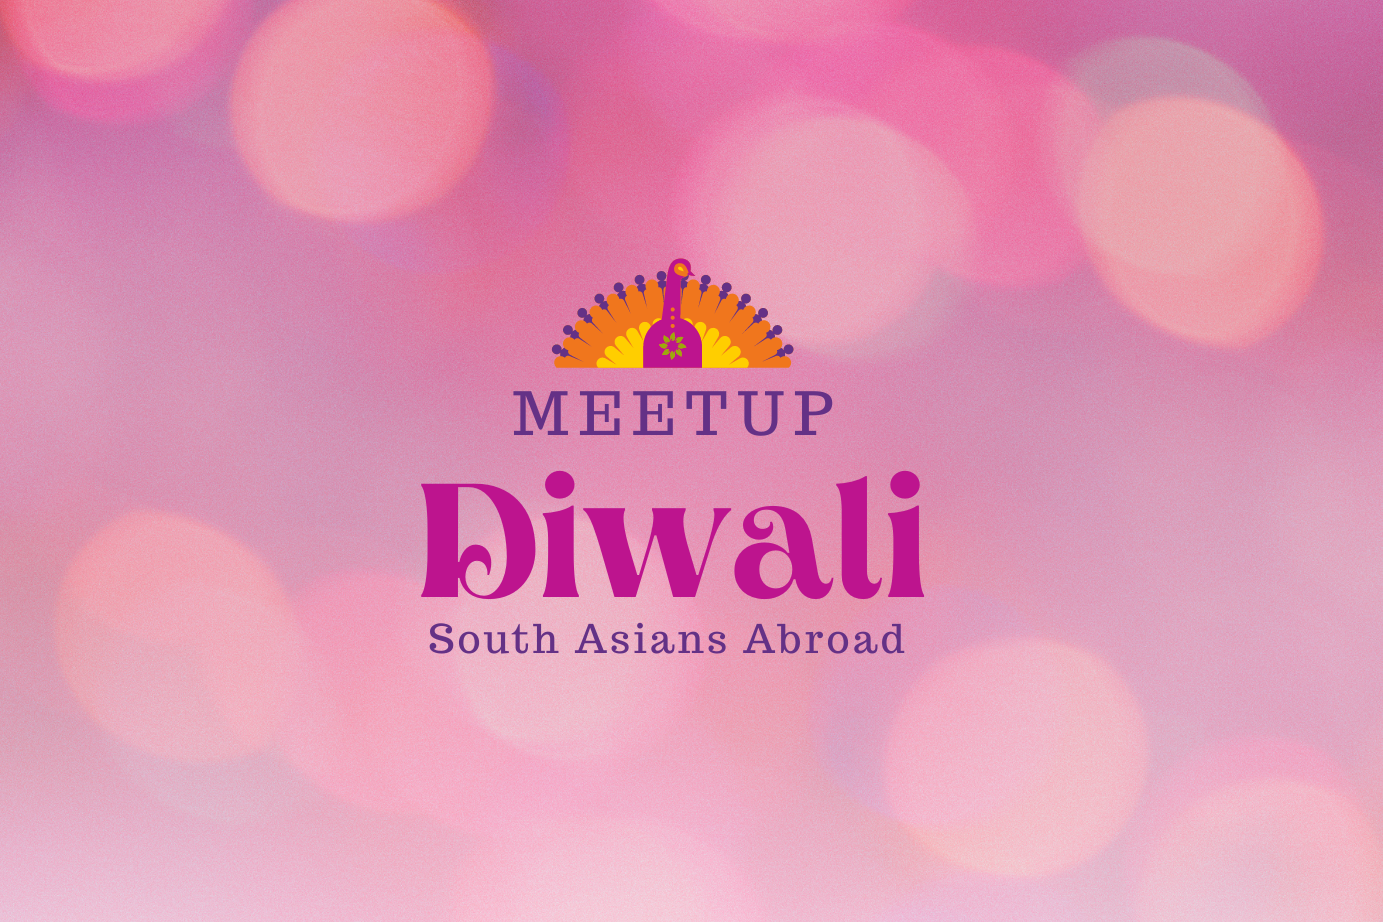 South Asians Abroad: A Diwali Meetup